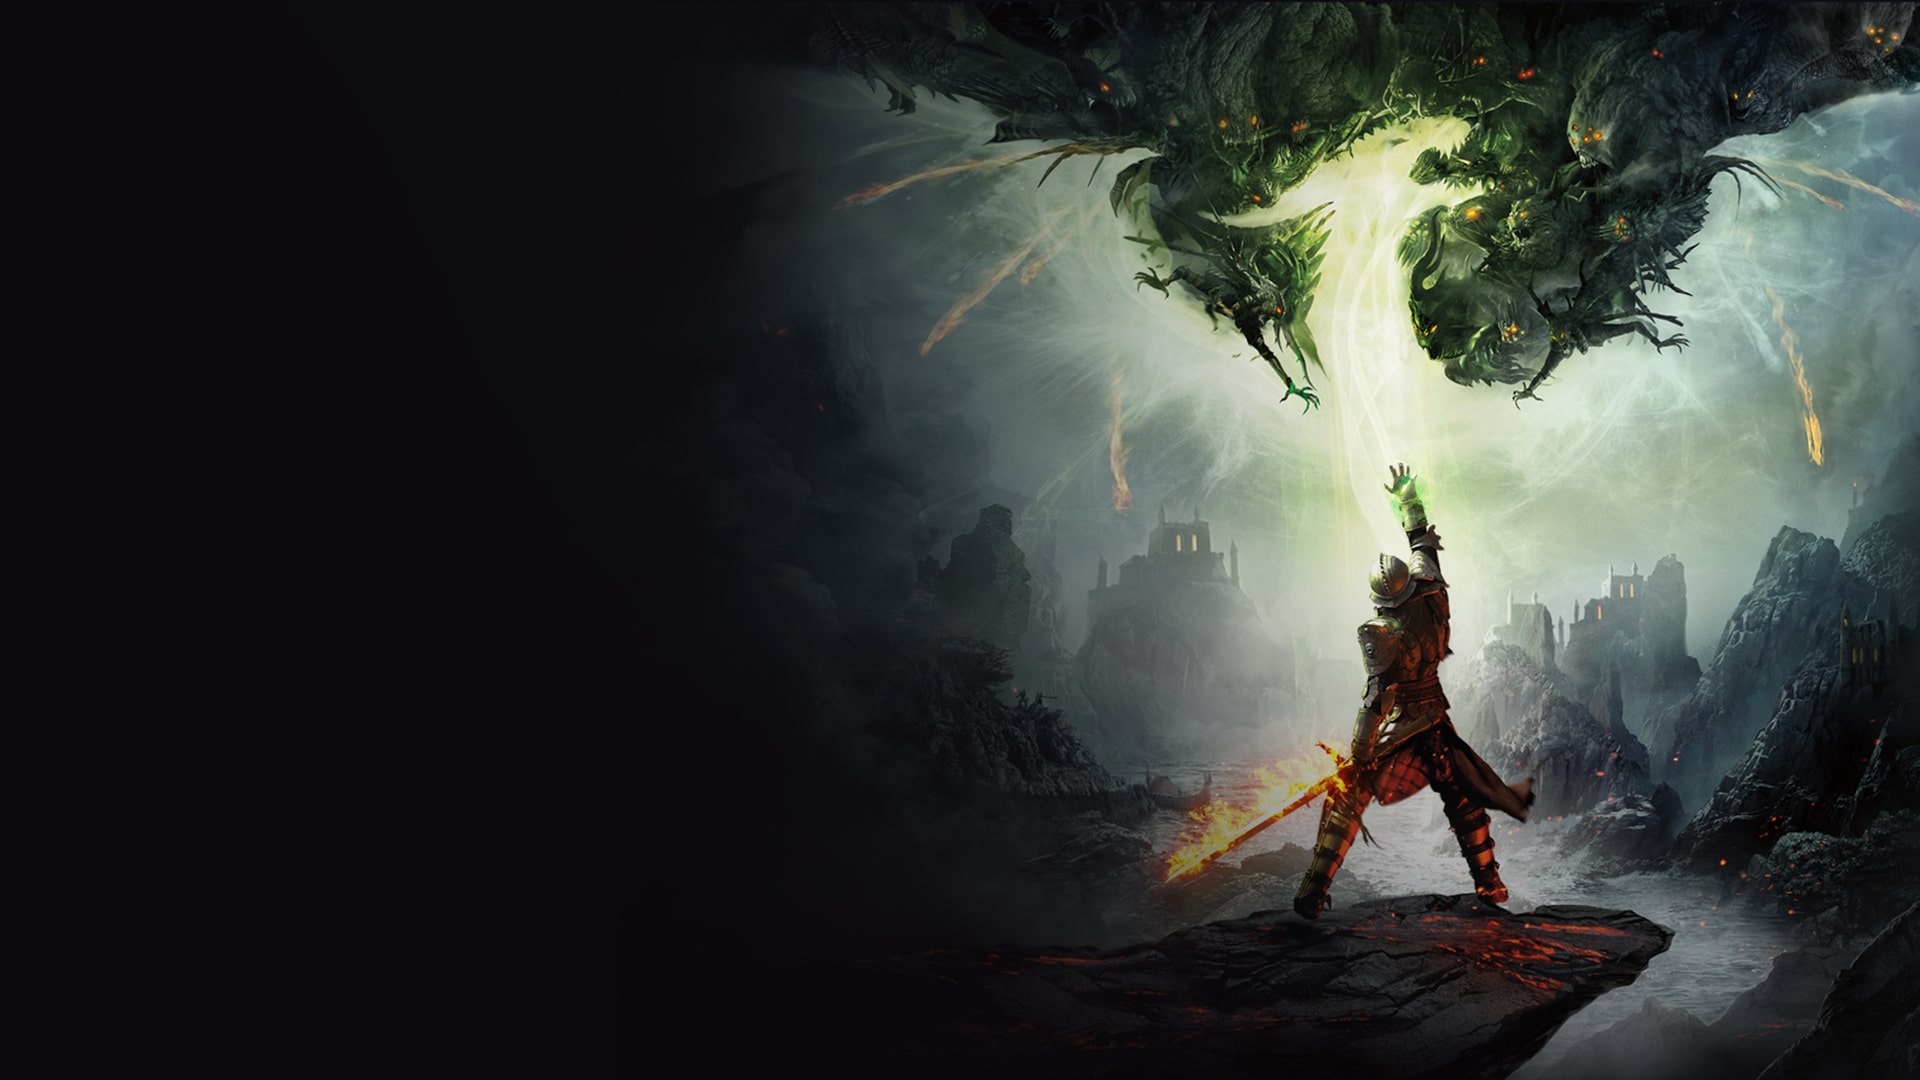 Dragon Age Inquisition: especificações do PC, consoles e novas